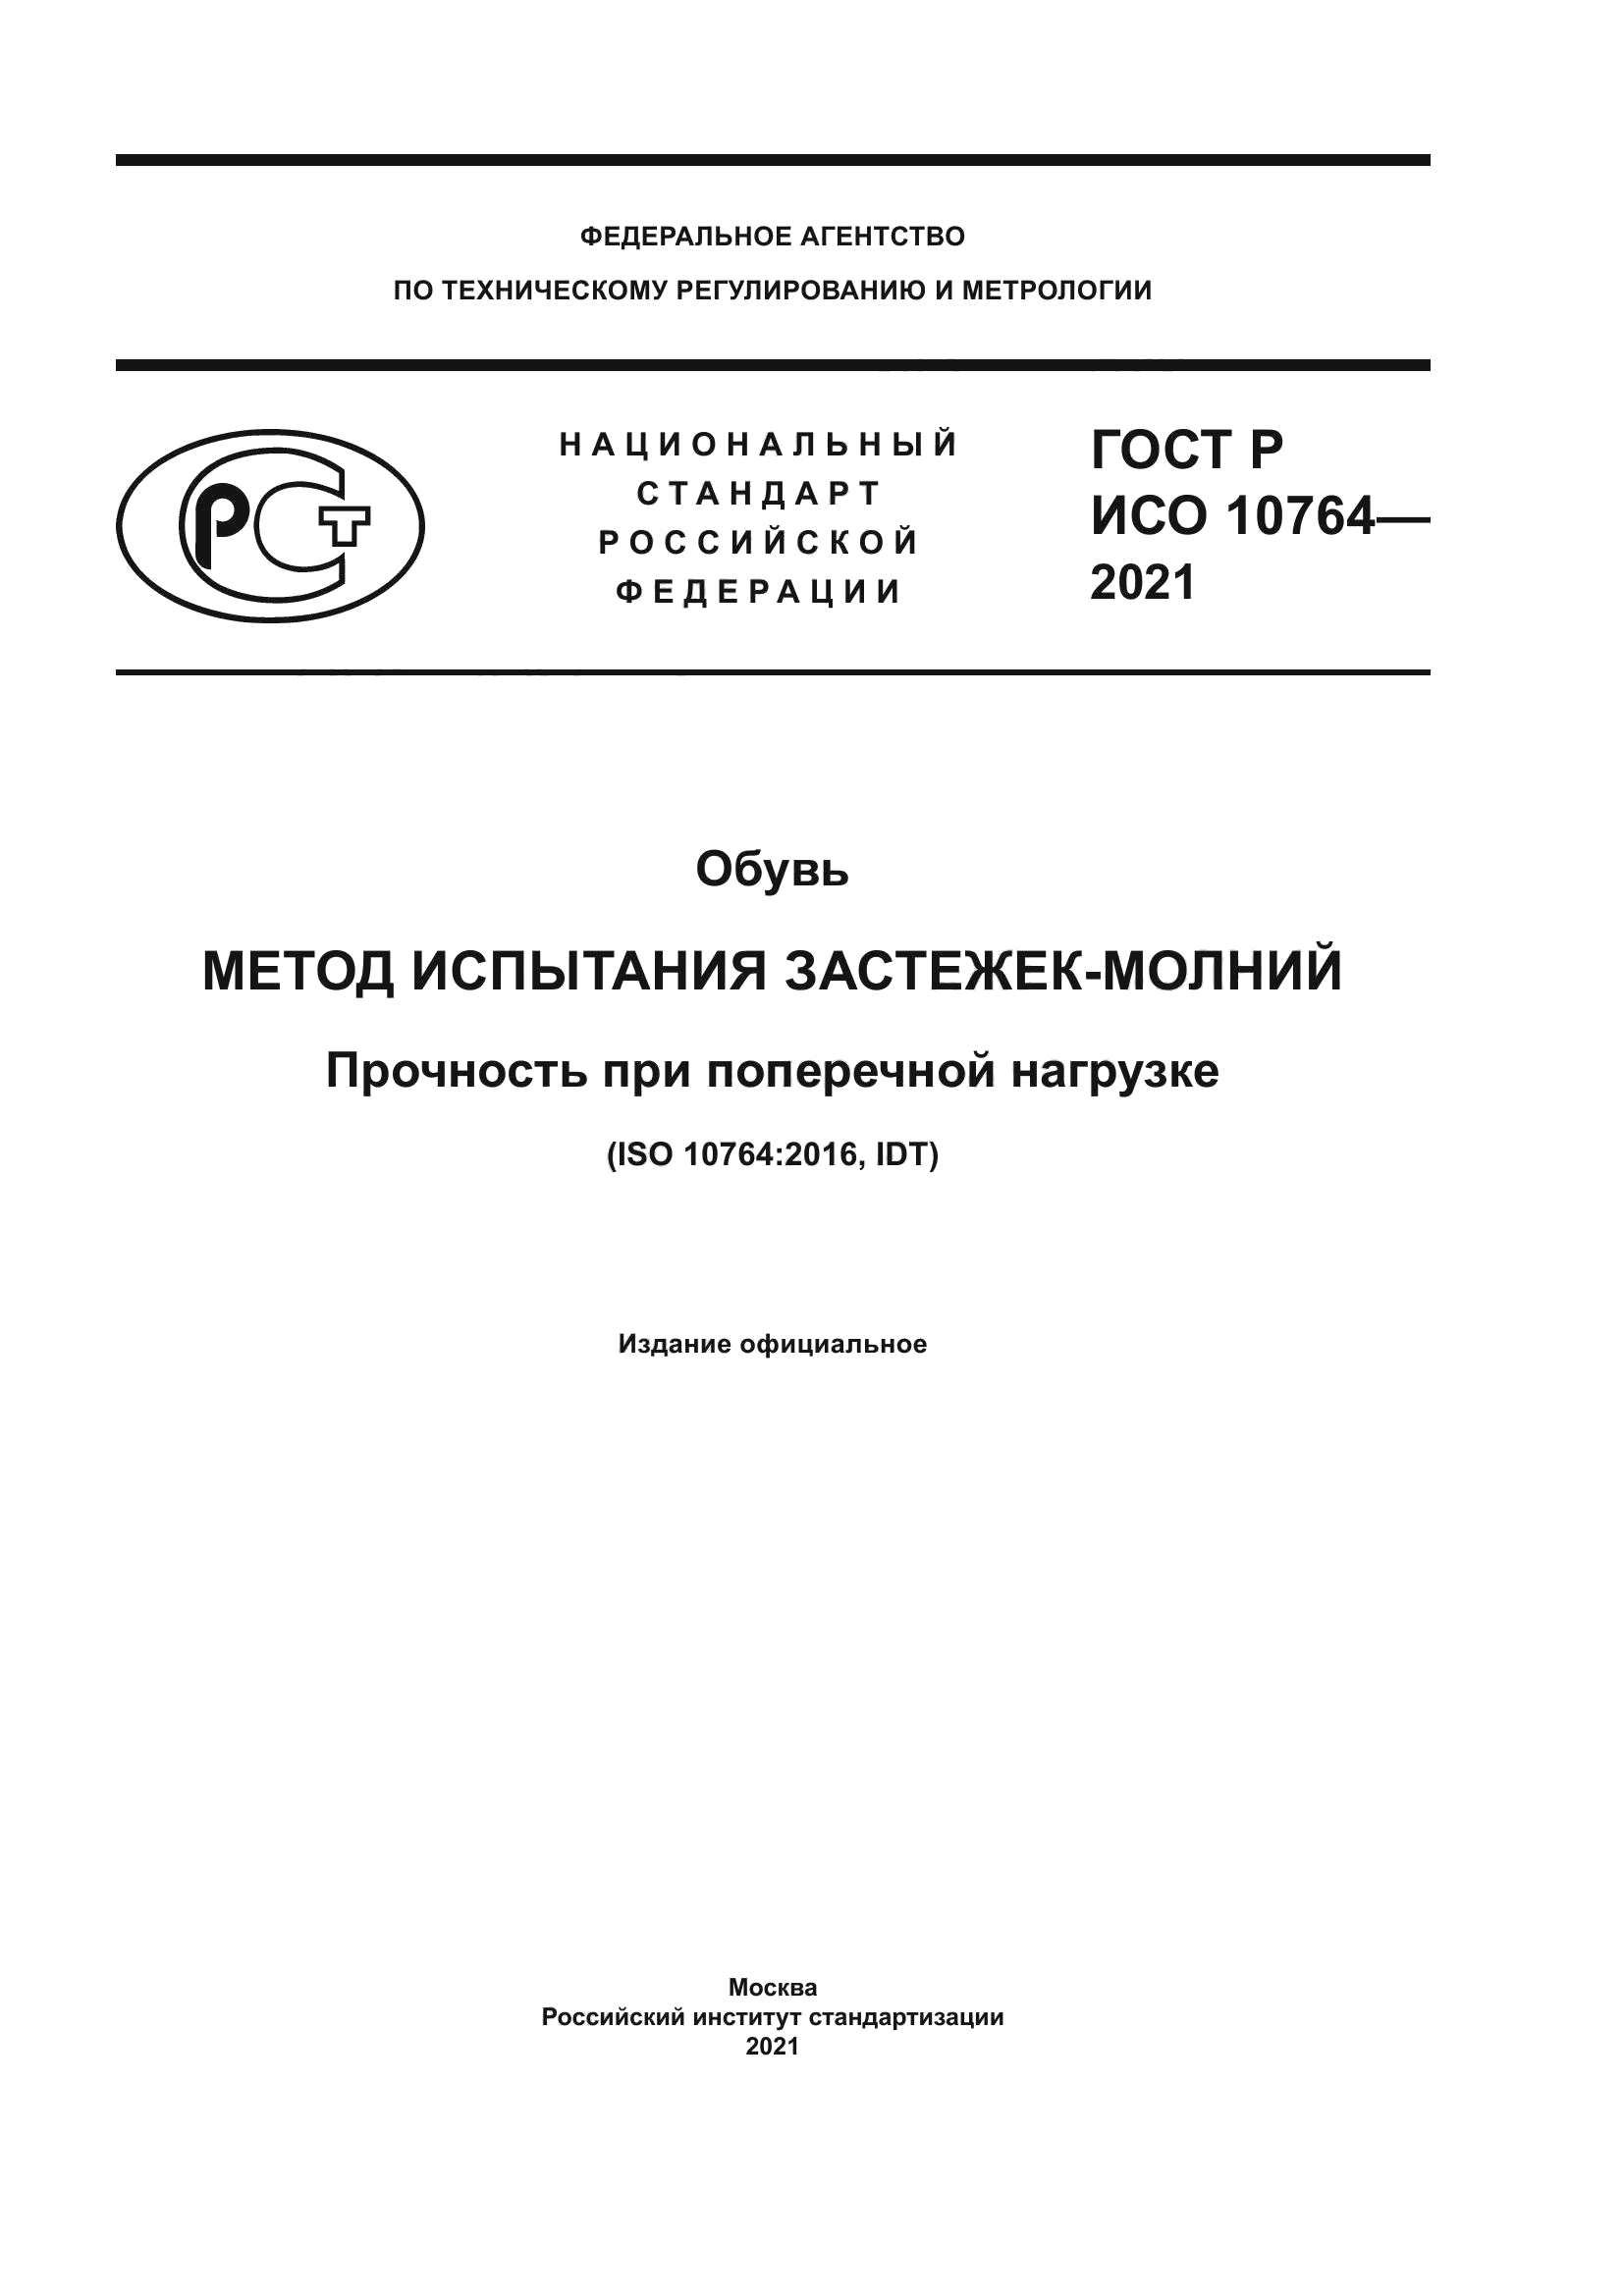 ГОСТ Р ИСО 10764-2021